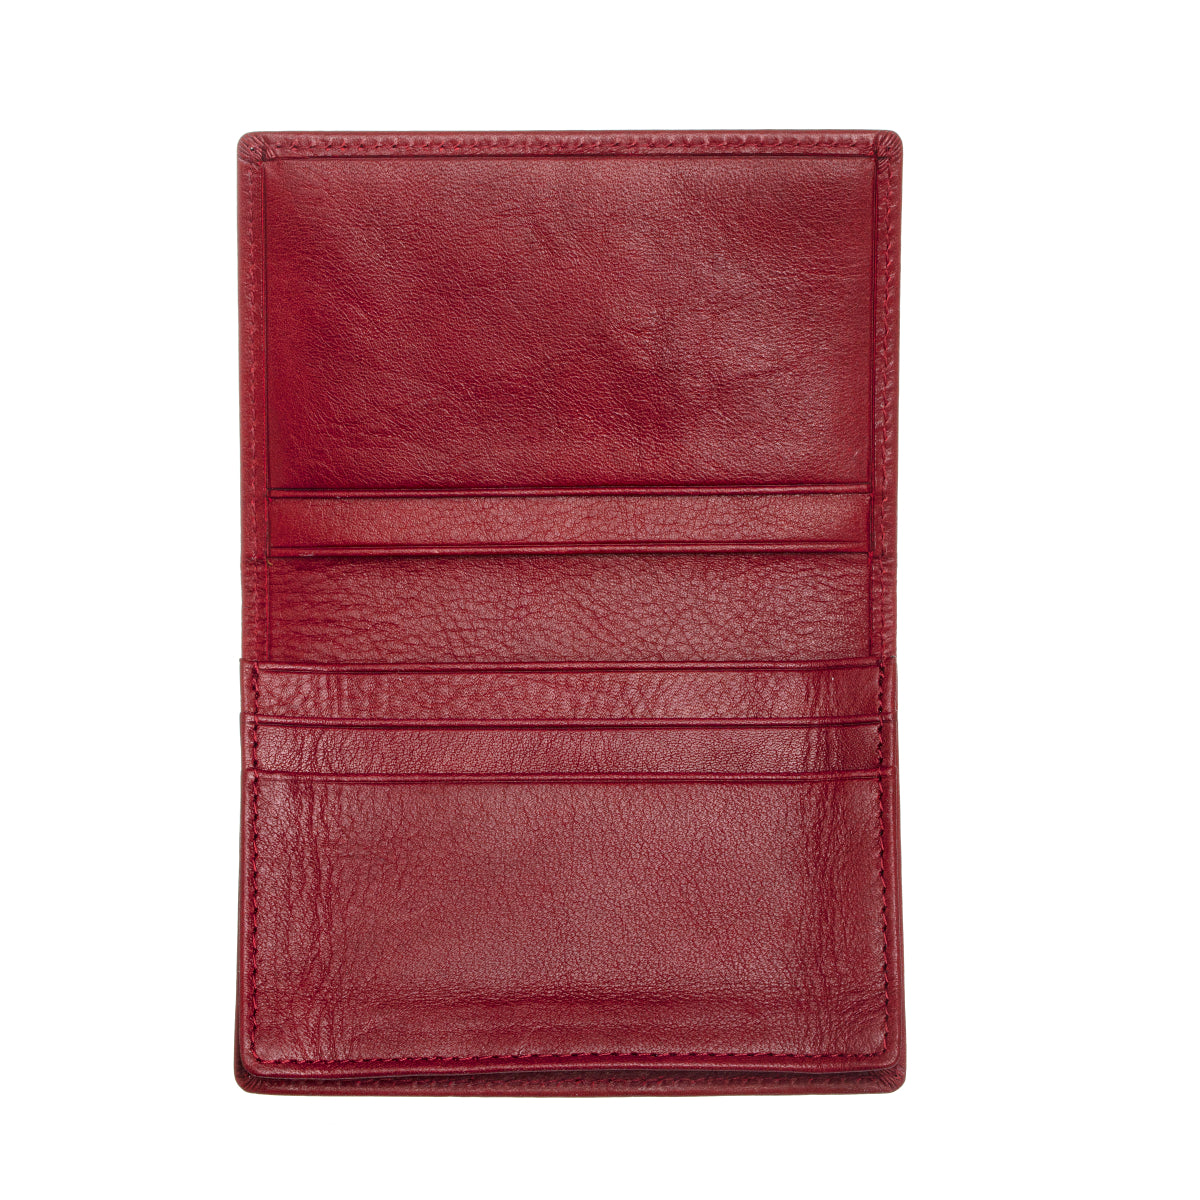 Breed Porter Genuine Leather Bi-Fold Wallet - Maroon - BRDWALL002-MRN